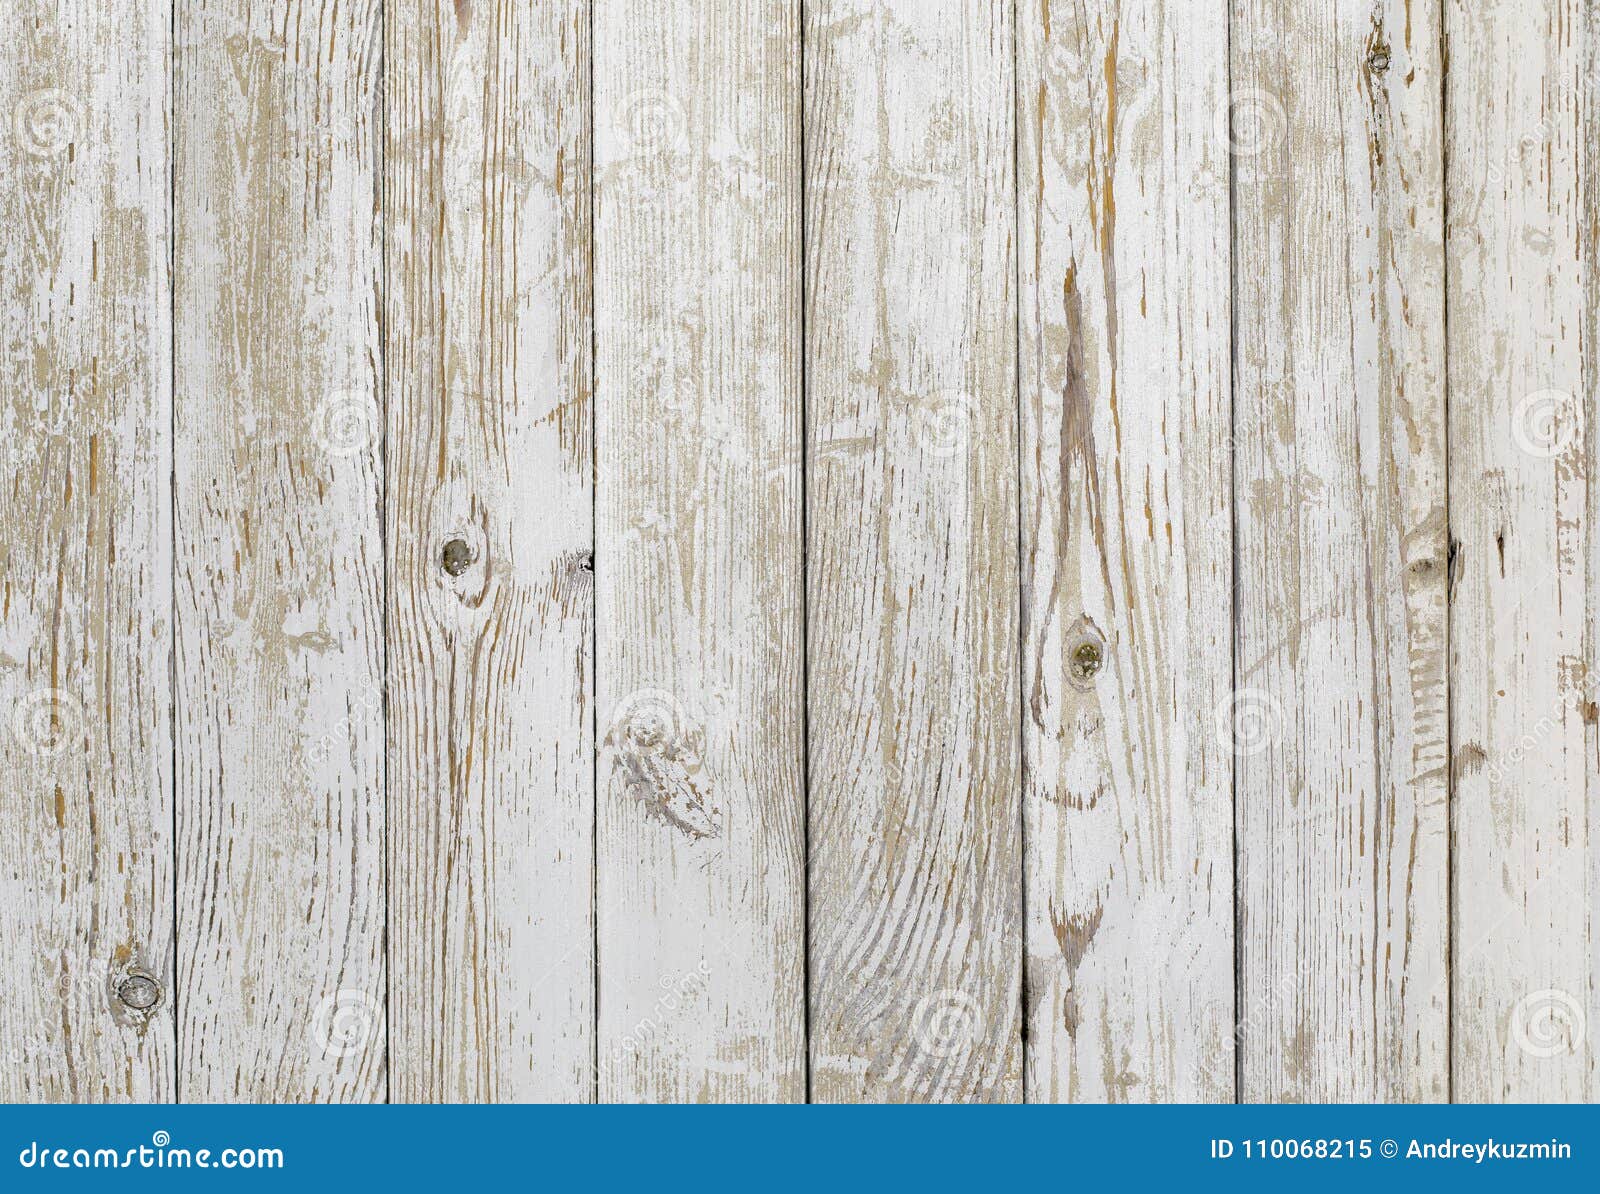 Hình nền gỗ cổ điển là một chủ đề được nhiều người yêu thích trong trang trí nội thất. Với ý tưởng làm nền cho các thiết kế ấn tượng, hình ảnh gỗ cổ điển sẽ mang đến cho ngôi nhà của bạn một phong cách riêng biệt, quý phái và đẳng cấp.